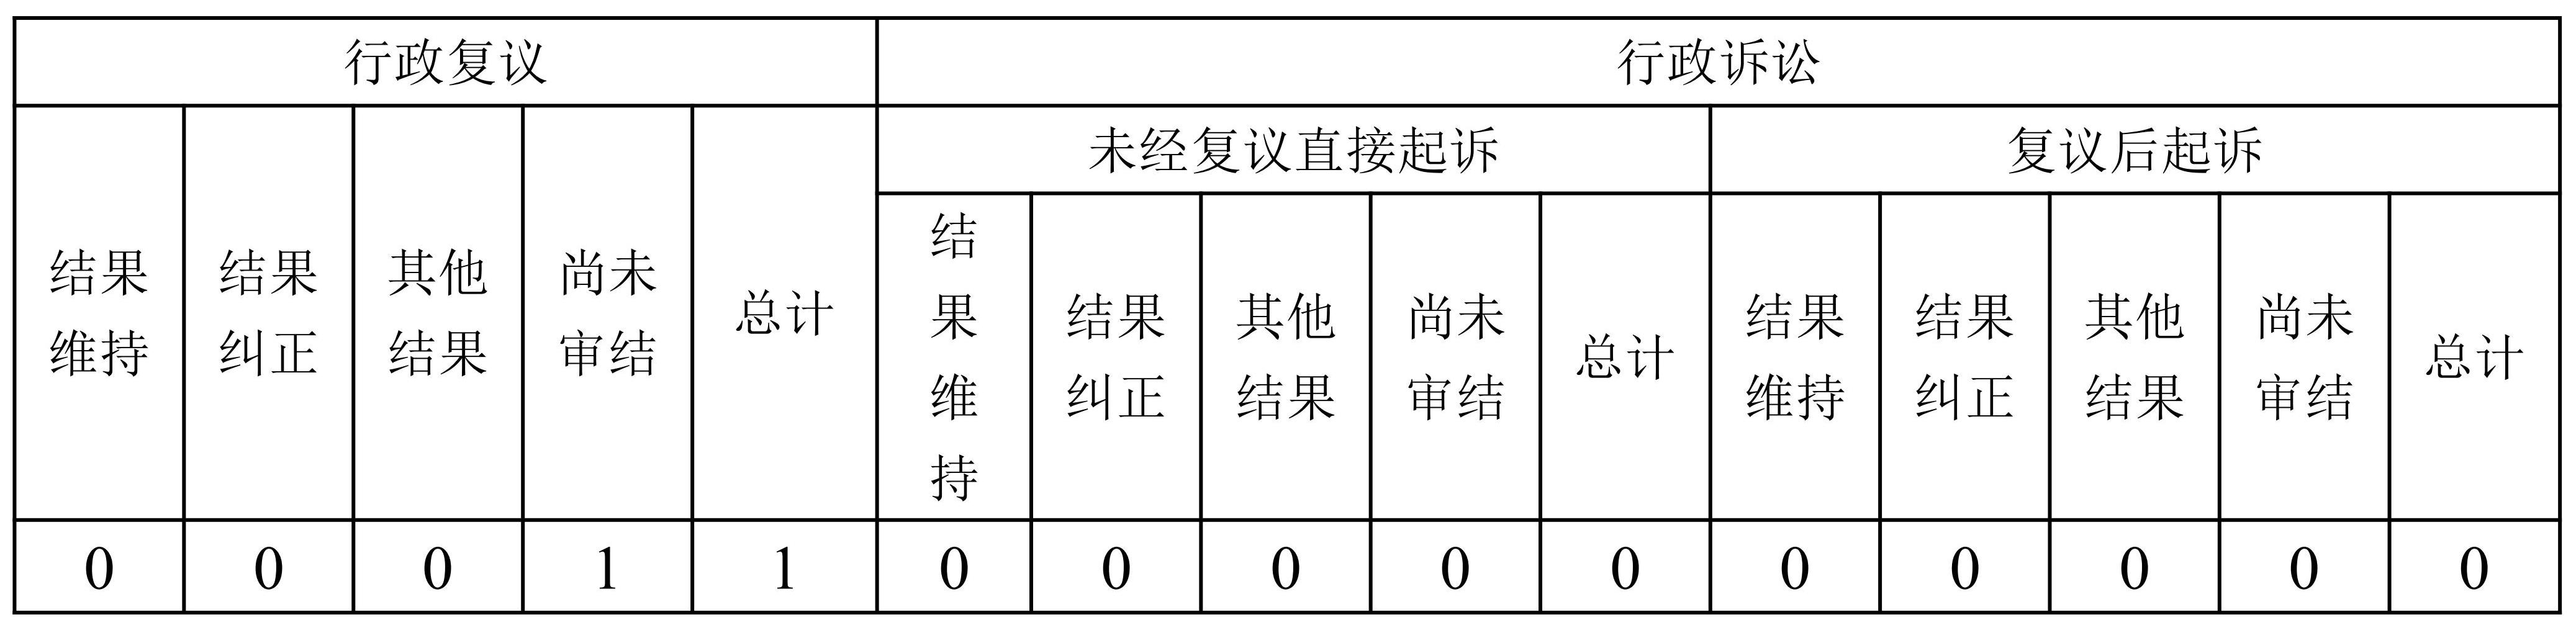 启东市行政审批局2022年政府信息公开工作年度报告·改_02.jpg